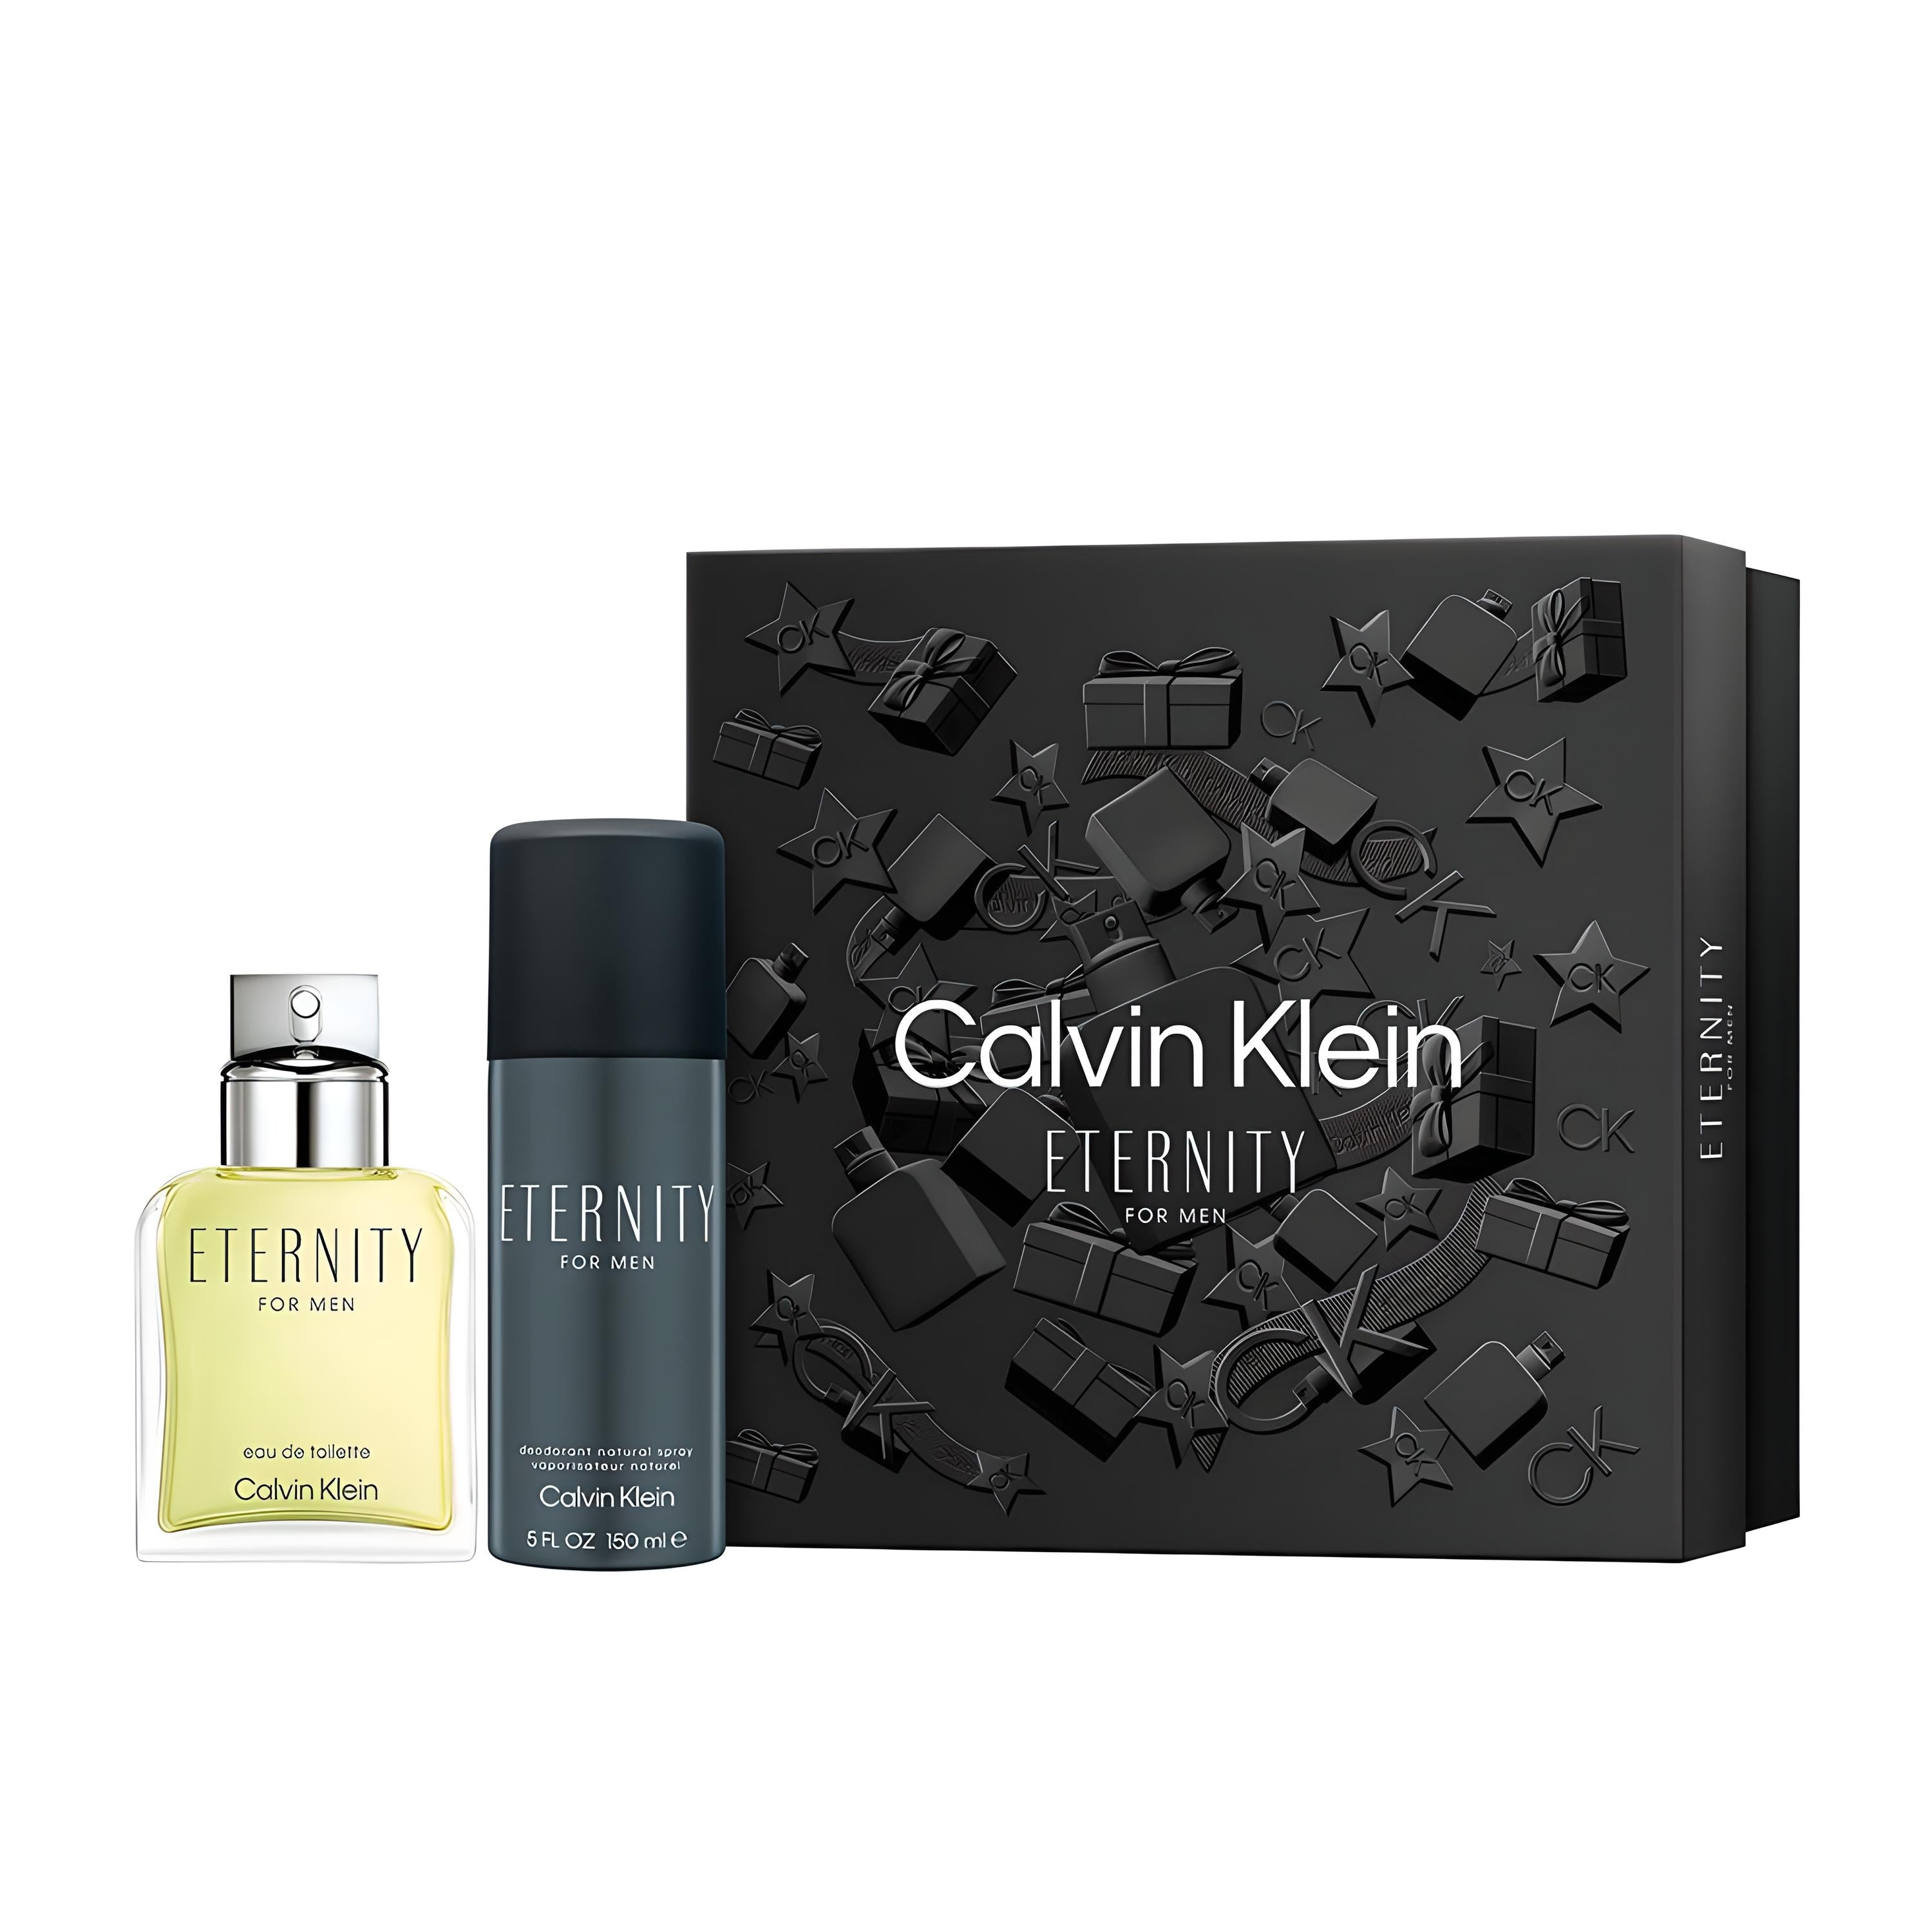 Calvin Klein ETERNITY FOR MEN EDT und DEO Geschenkset Parfum-Set CALVIN KLEIN   